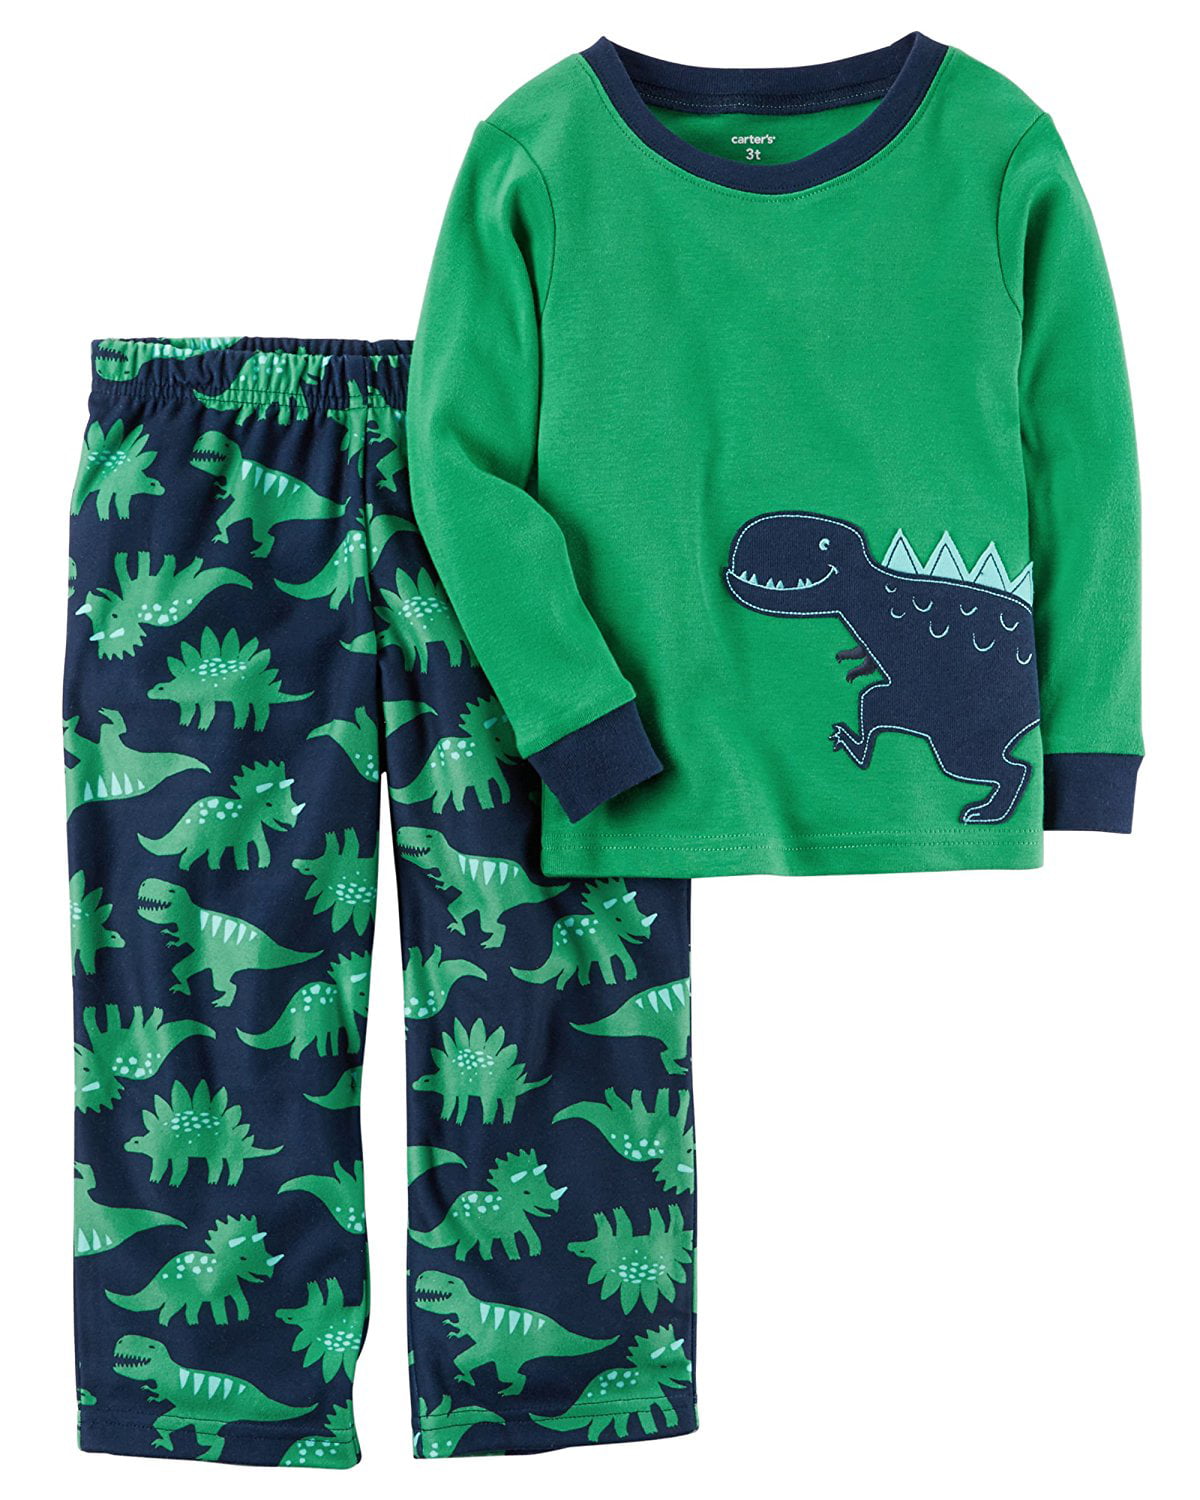 Carter's - Carter’s 2-Piece Boys Fleece Pajamas Top and Pants Winter ...